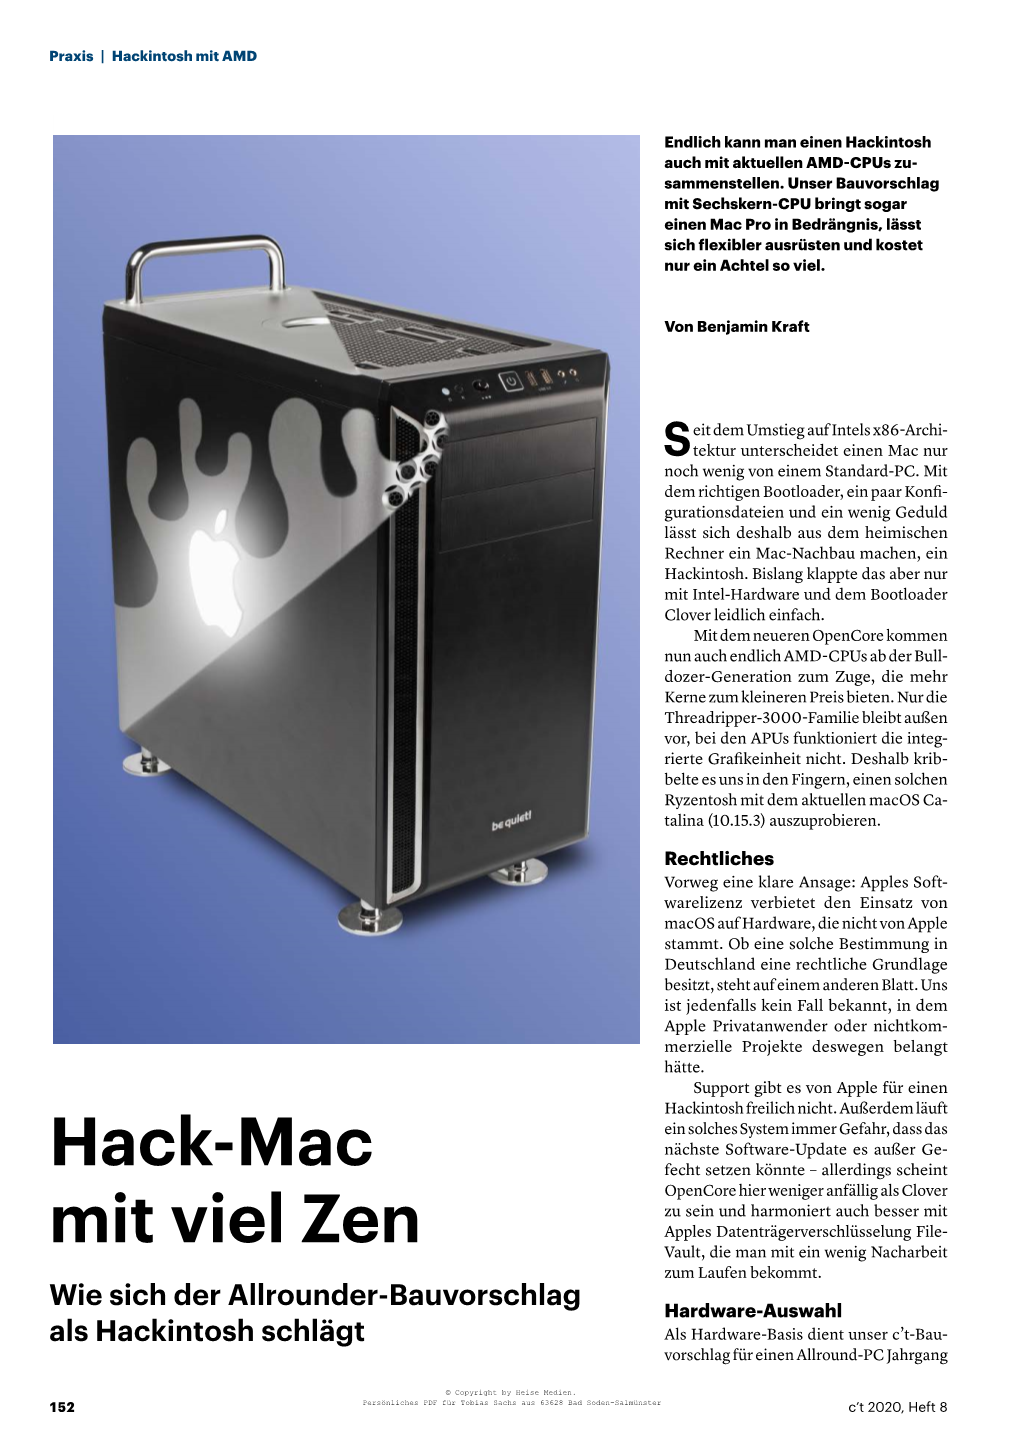 Hack-Mac Mit Viel